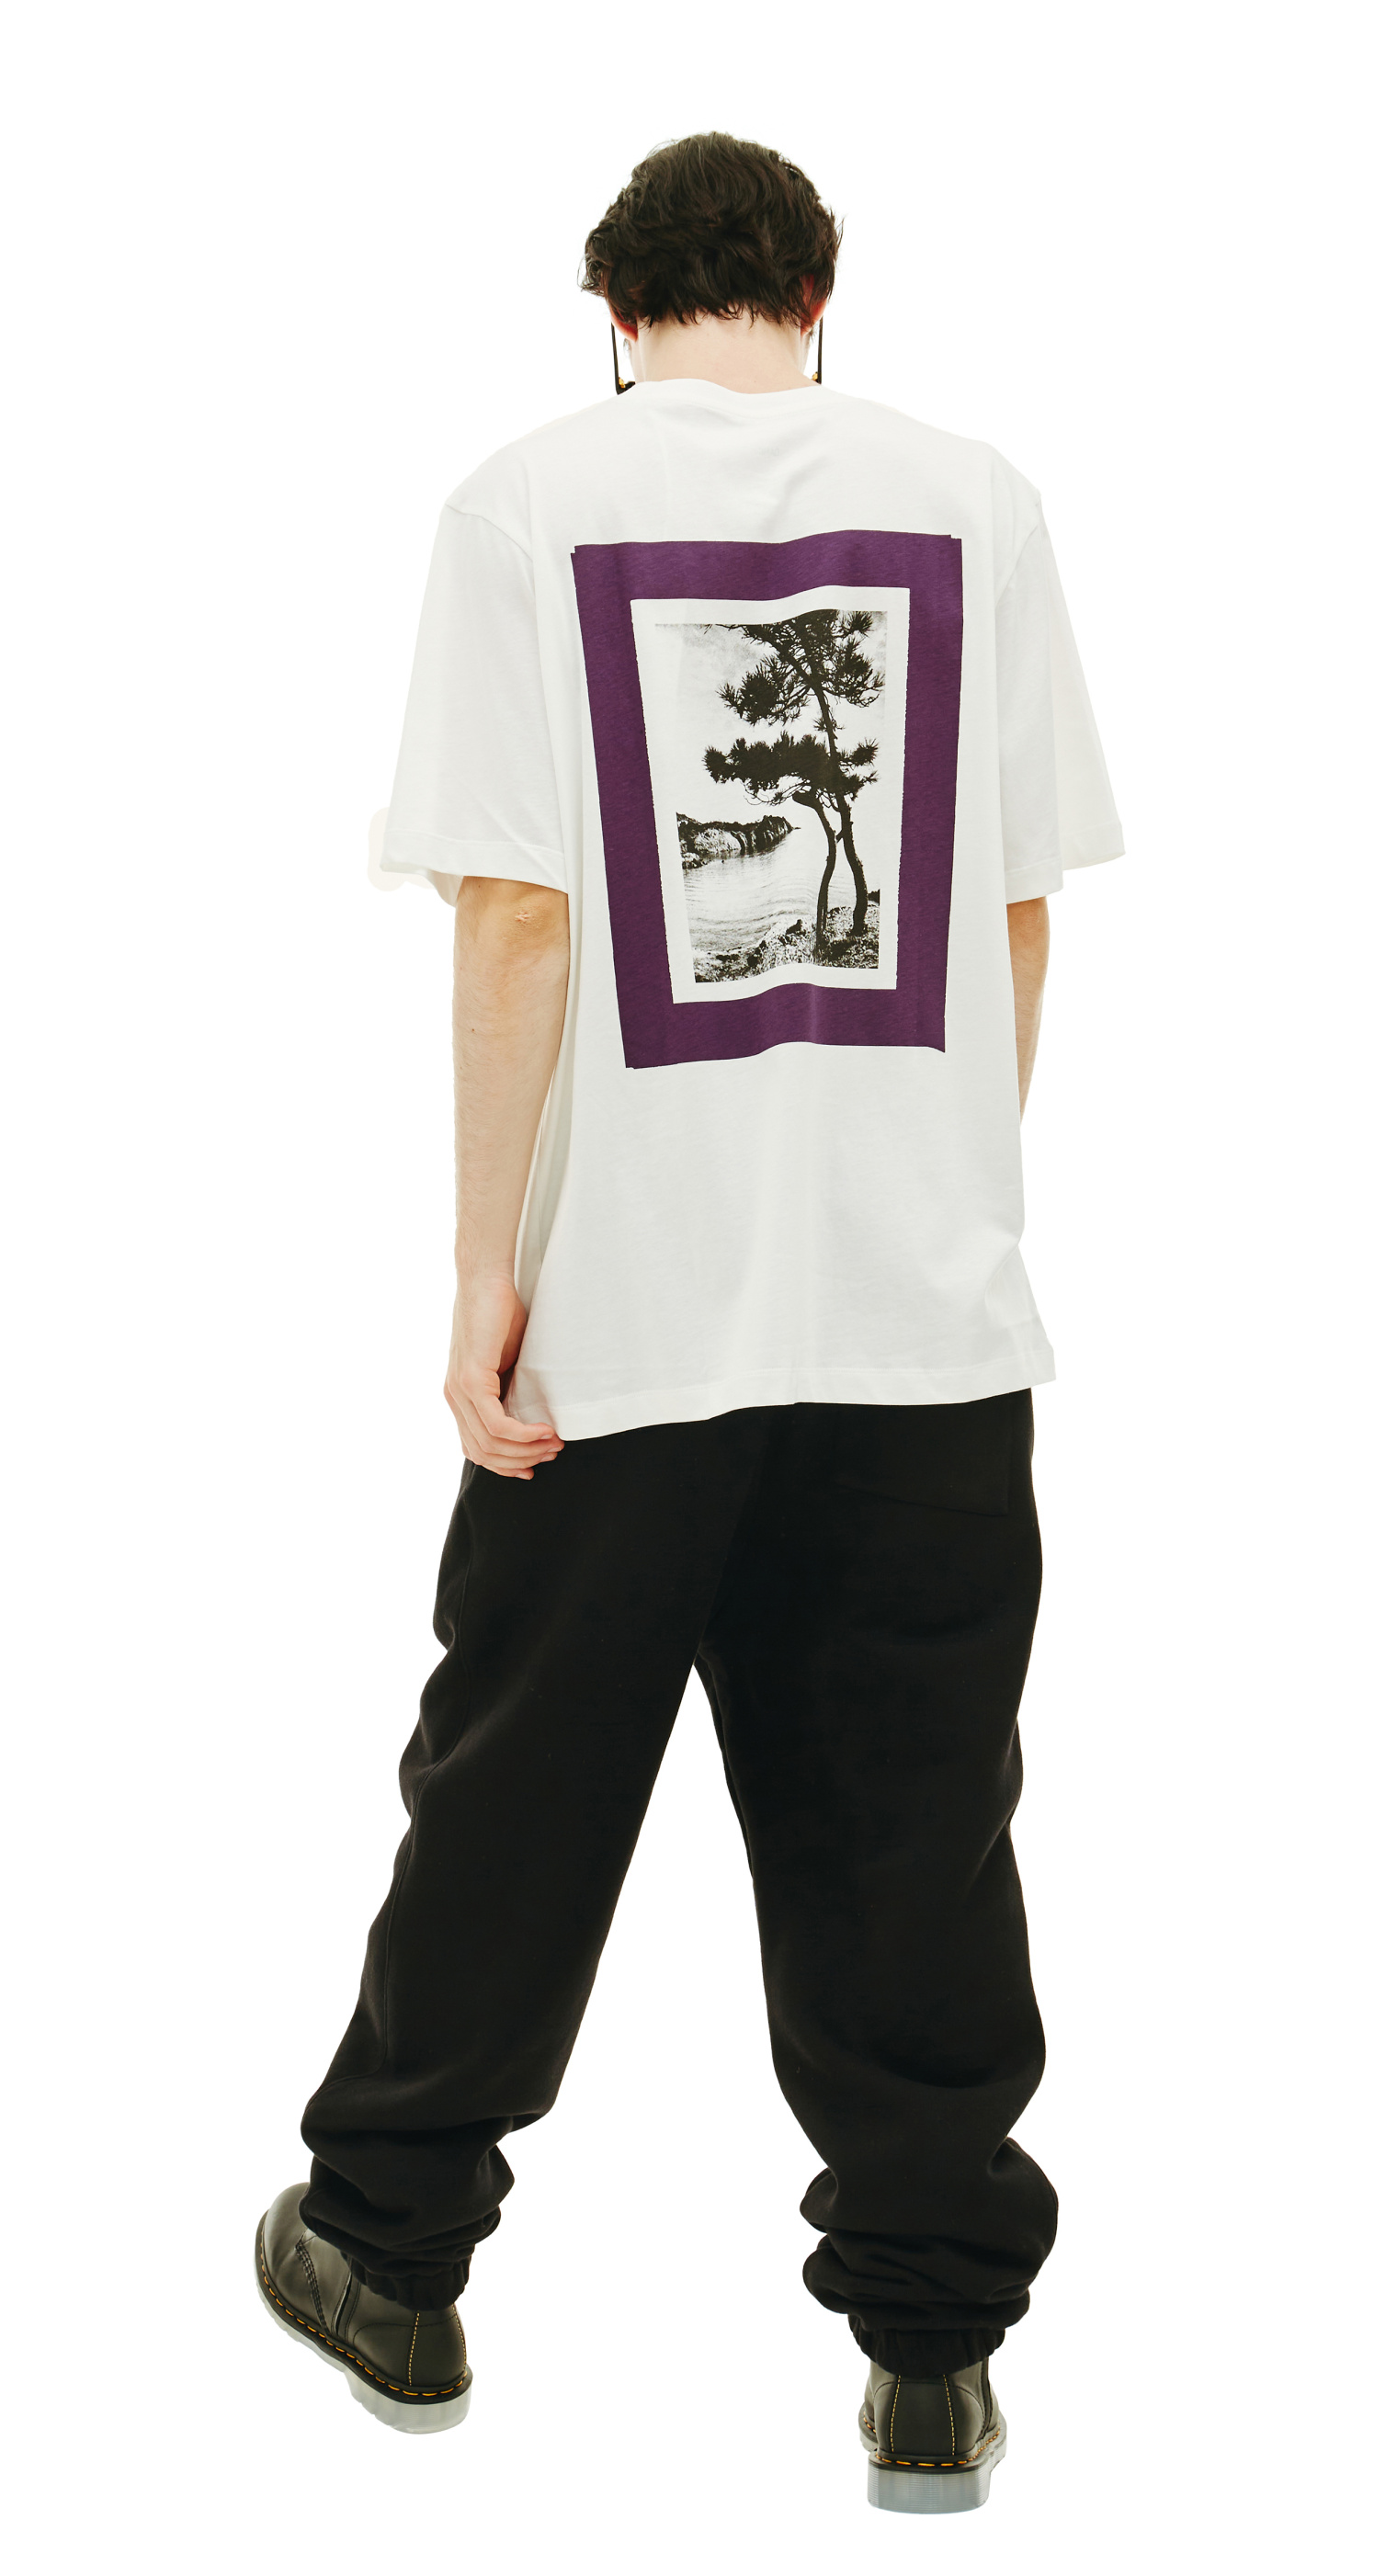 Buy OAMC men white paradise cotton t-shirt for $207 online on SV77 